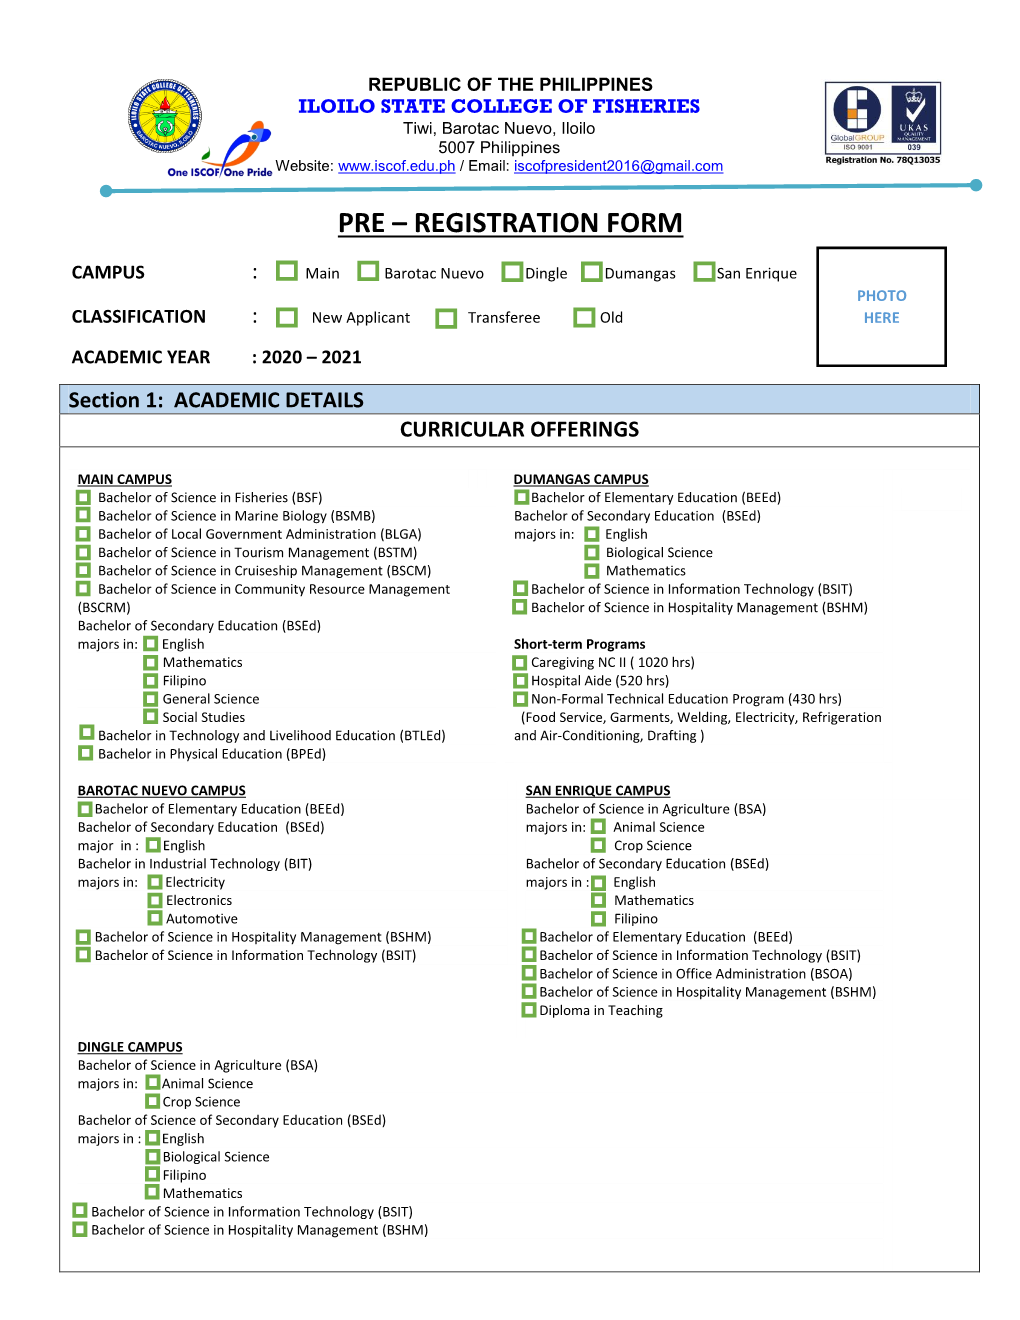 Pre – Registration Form